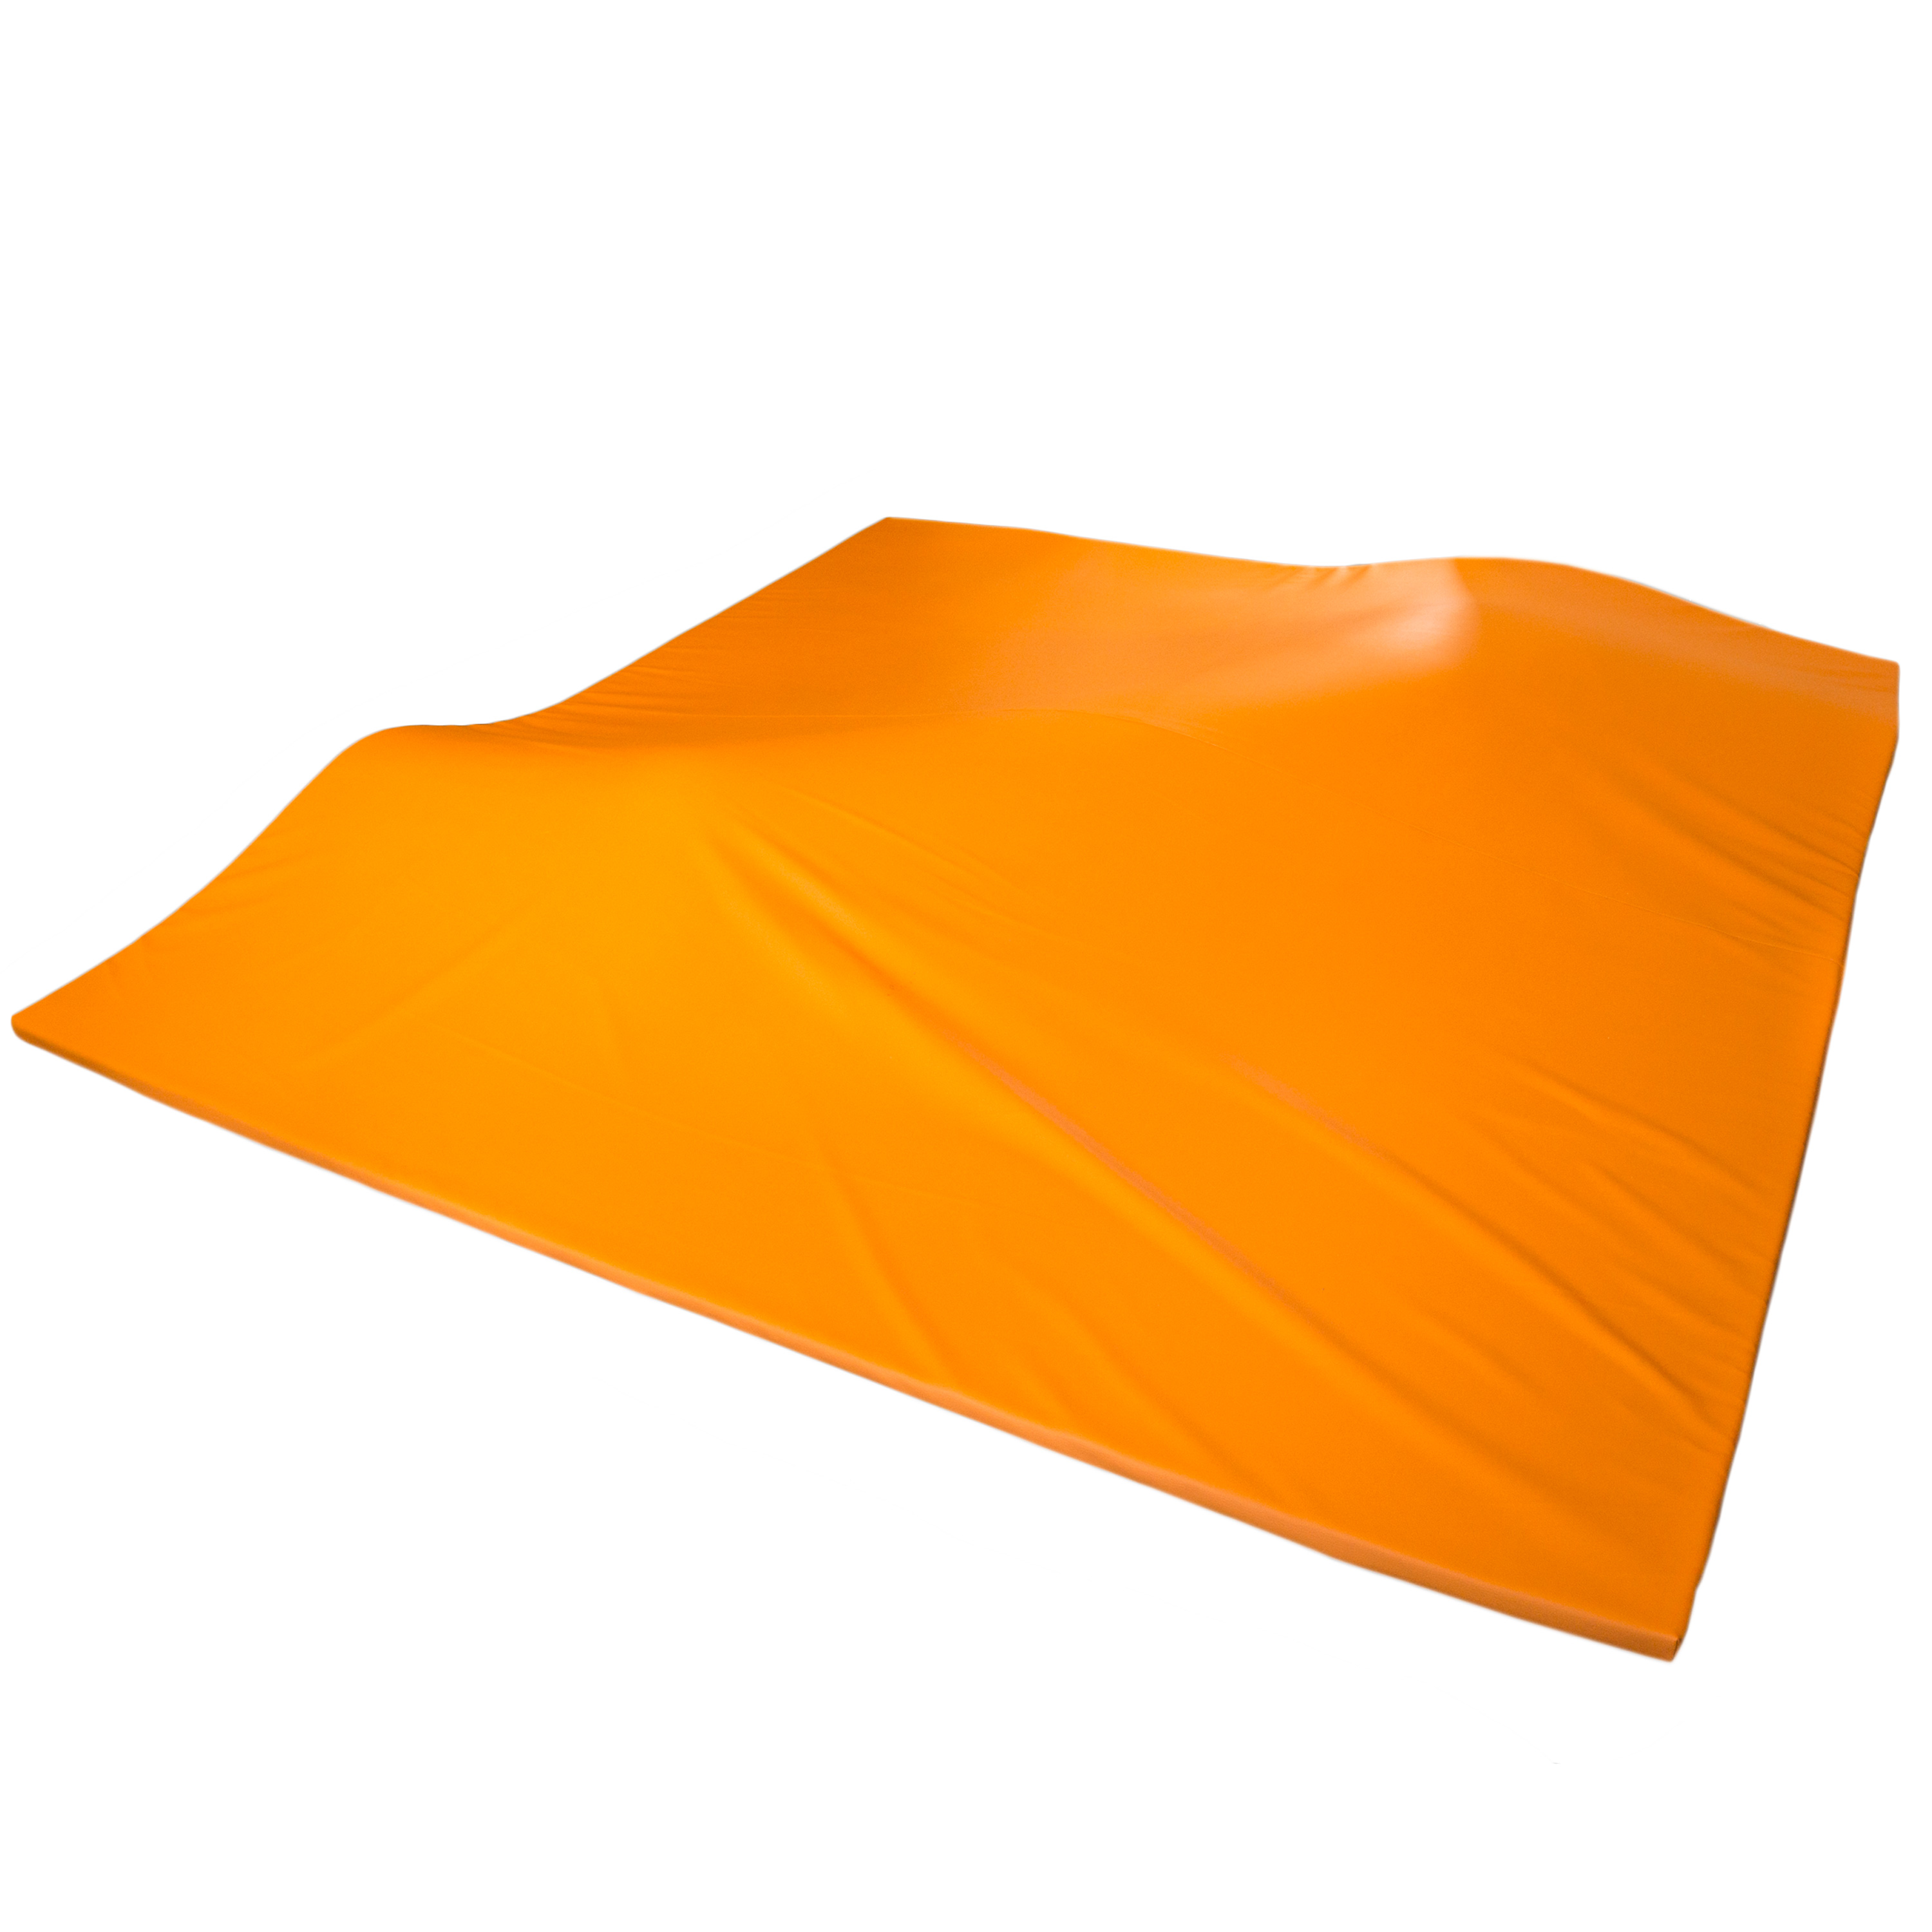 Erlebnismatte 'Meditap', 270 x 250 x 3 cm, orange